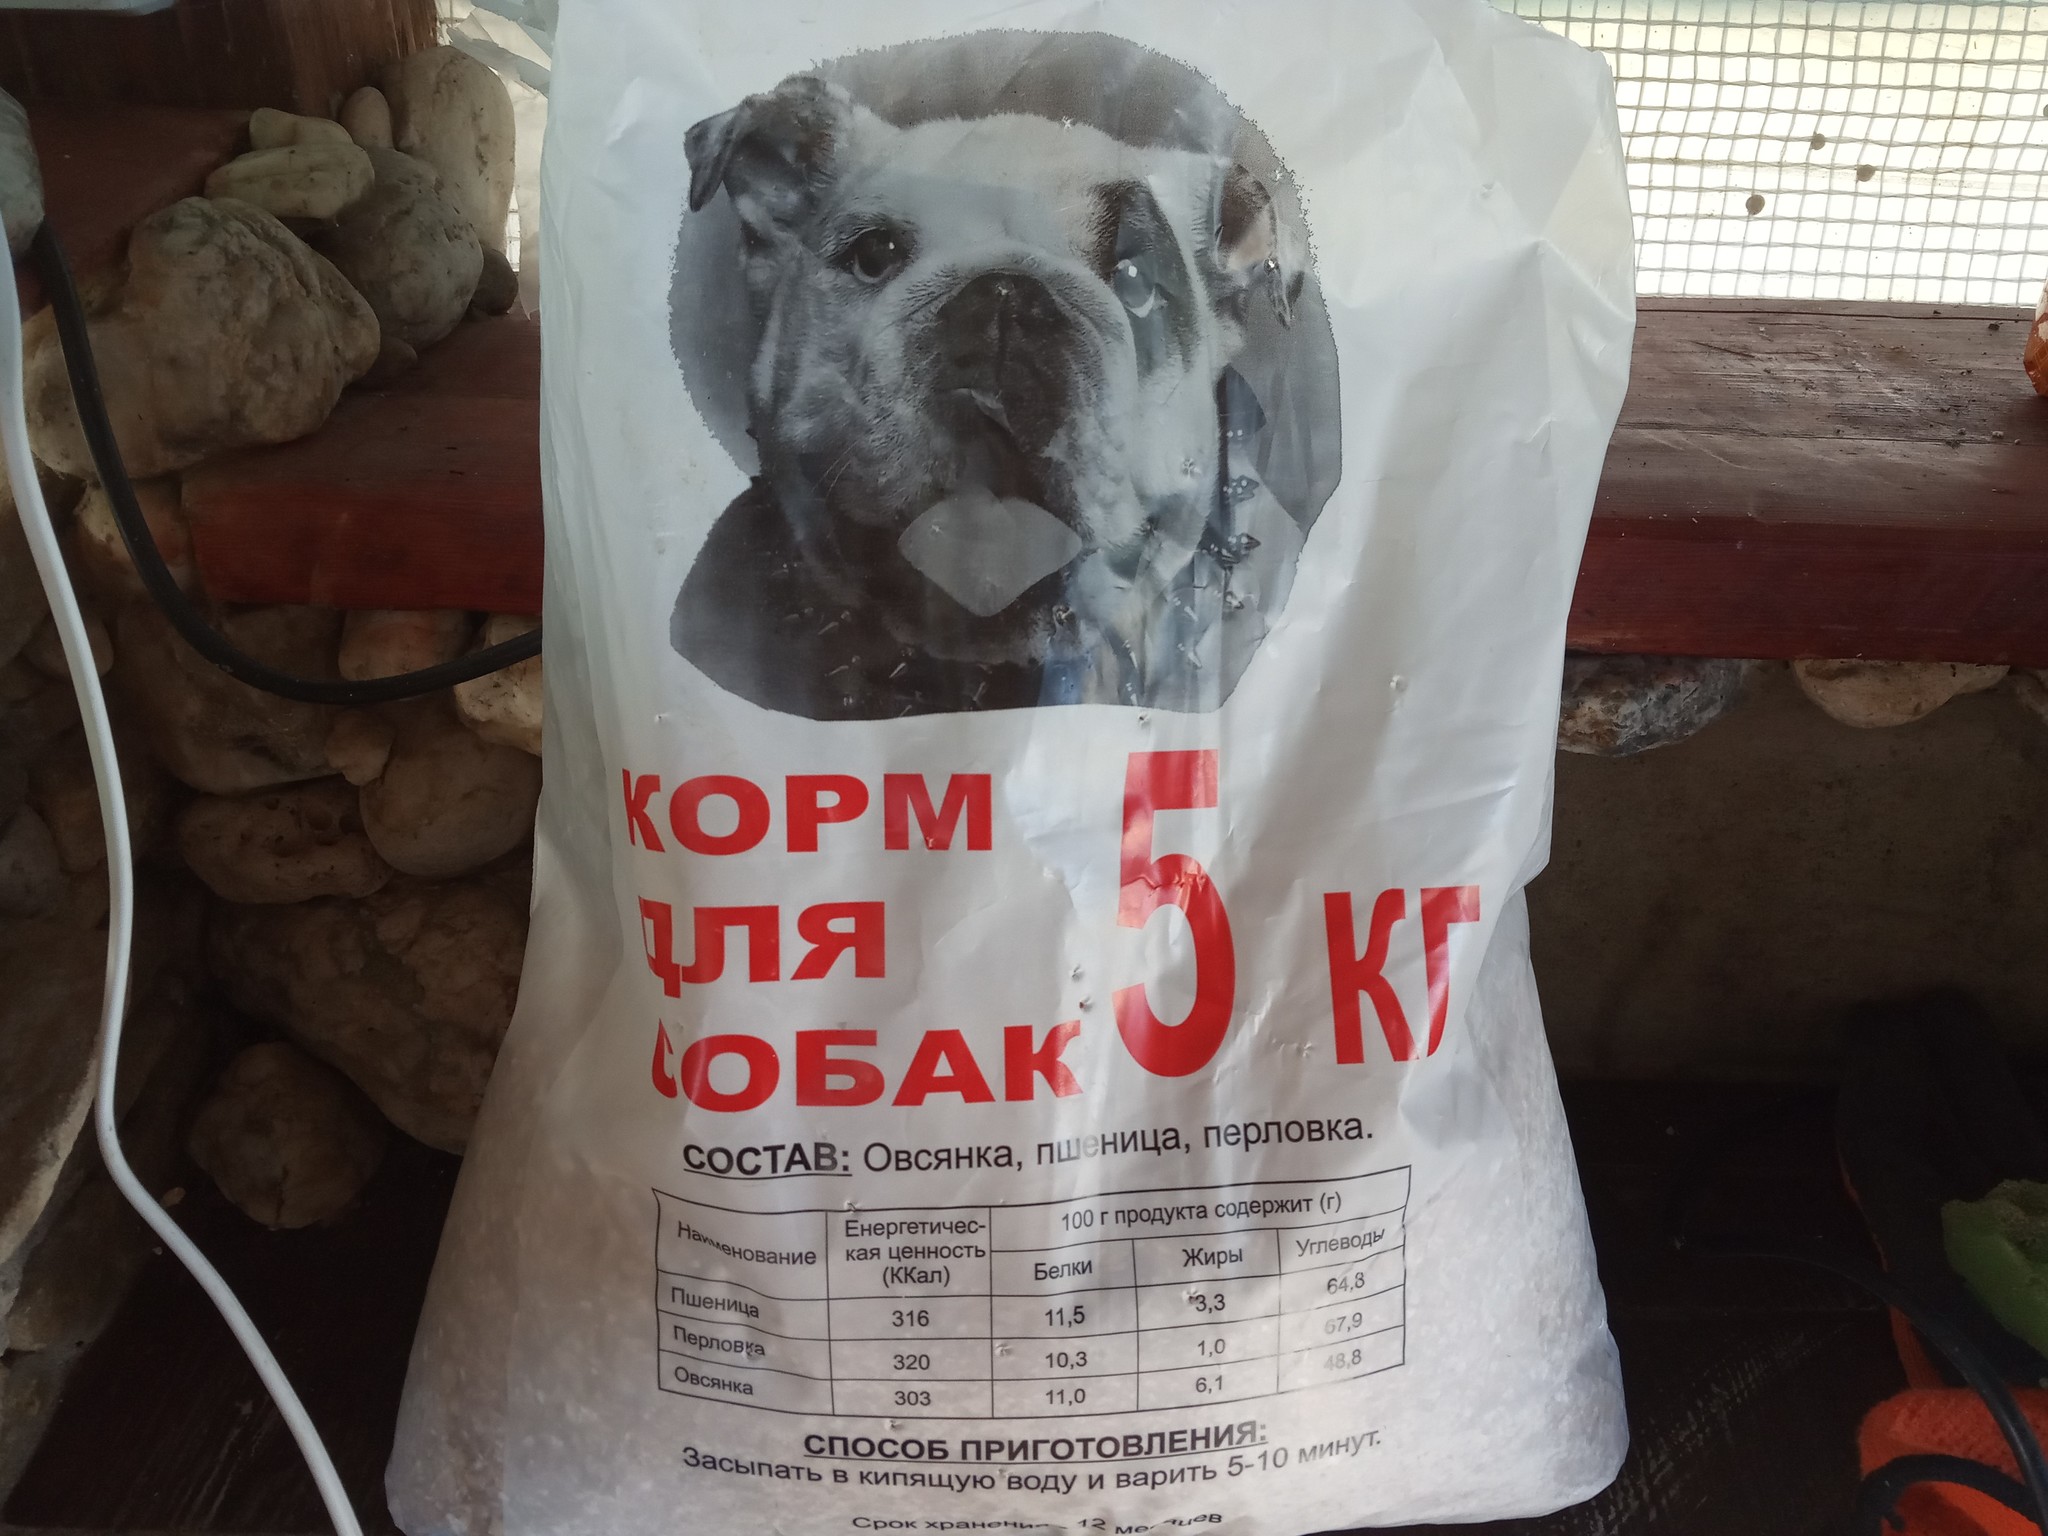 Корм для собак омск. Глебушка корм для собак. Собачий корм из хлеба. Собачий корм в СССР. Монс корм для собак.